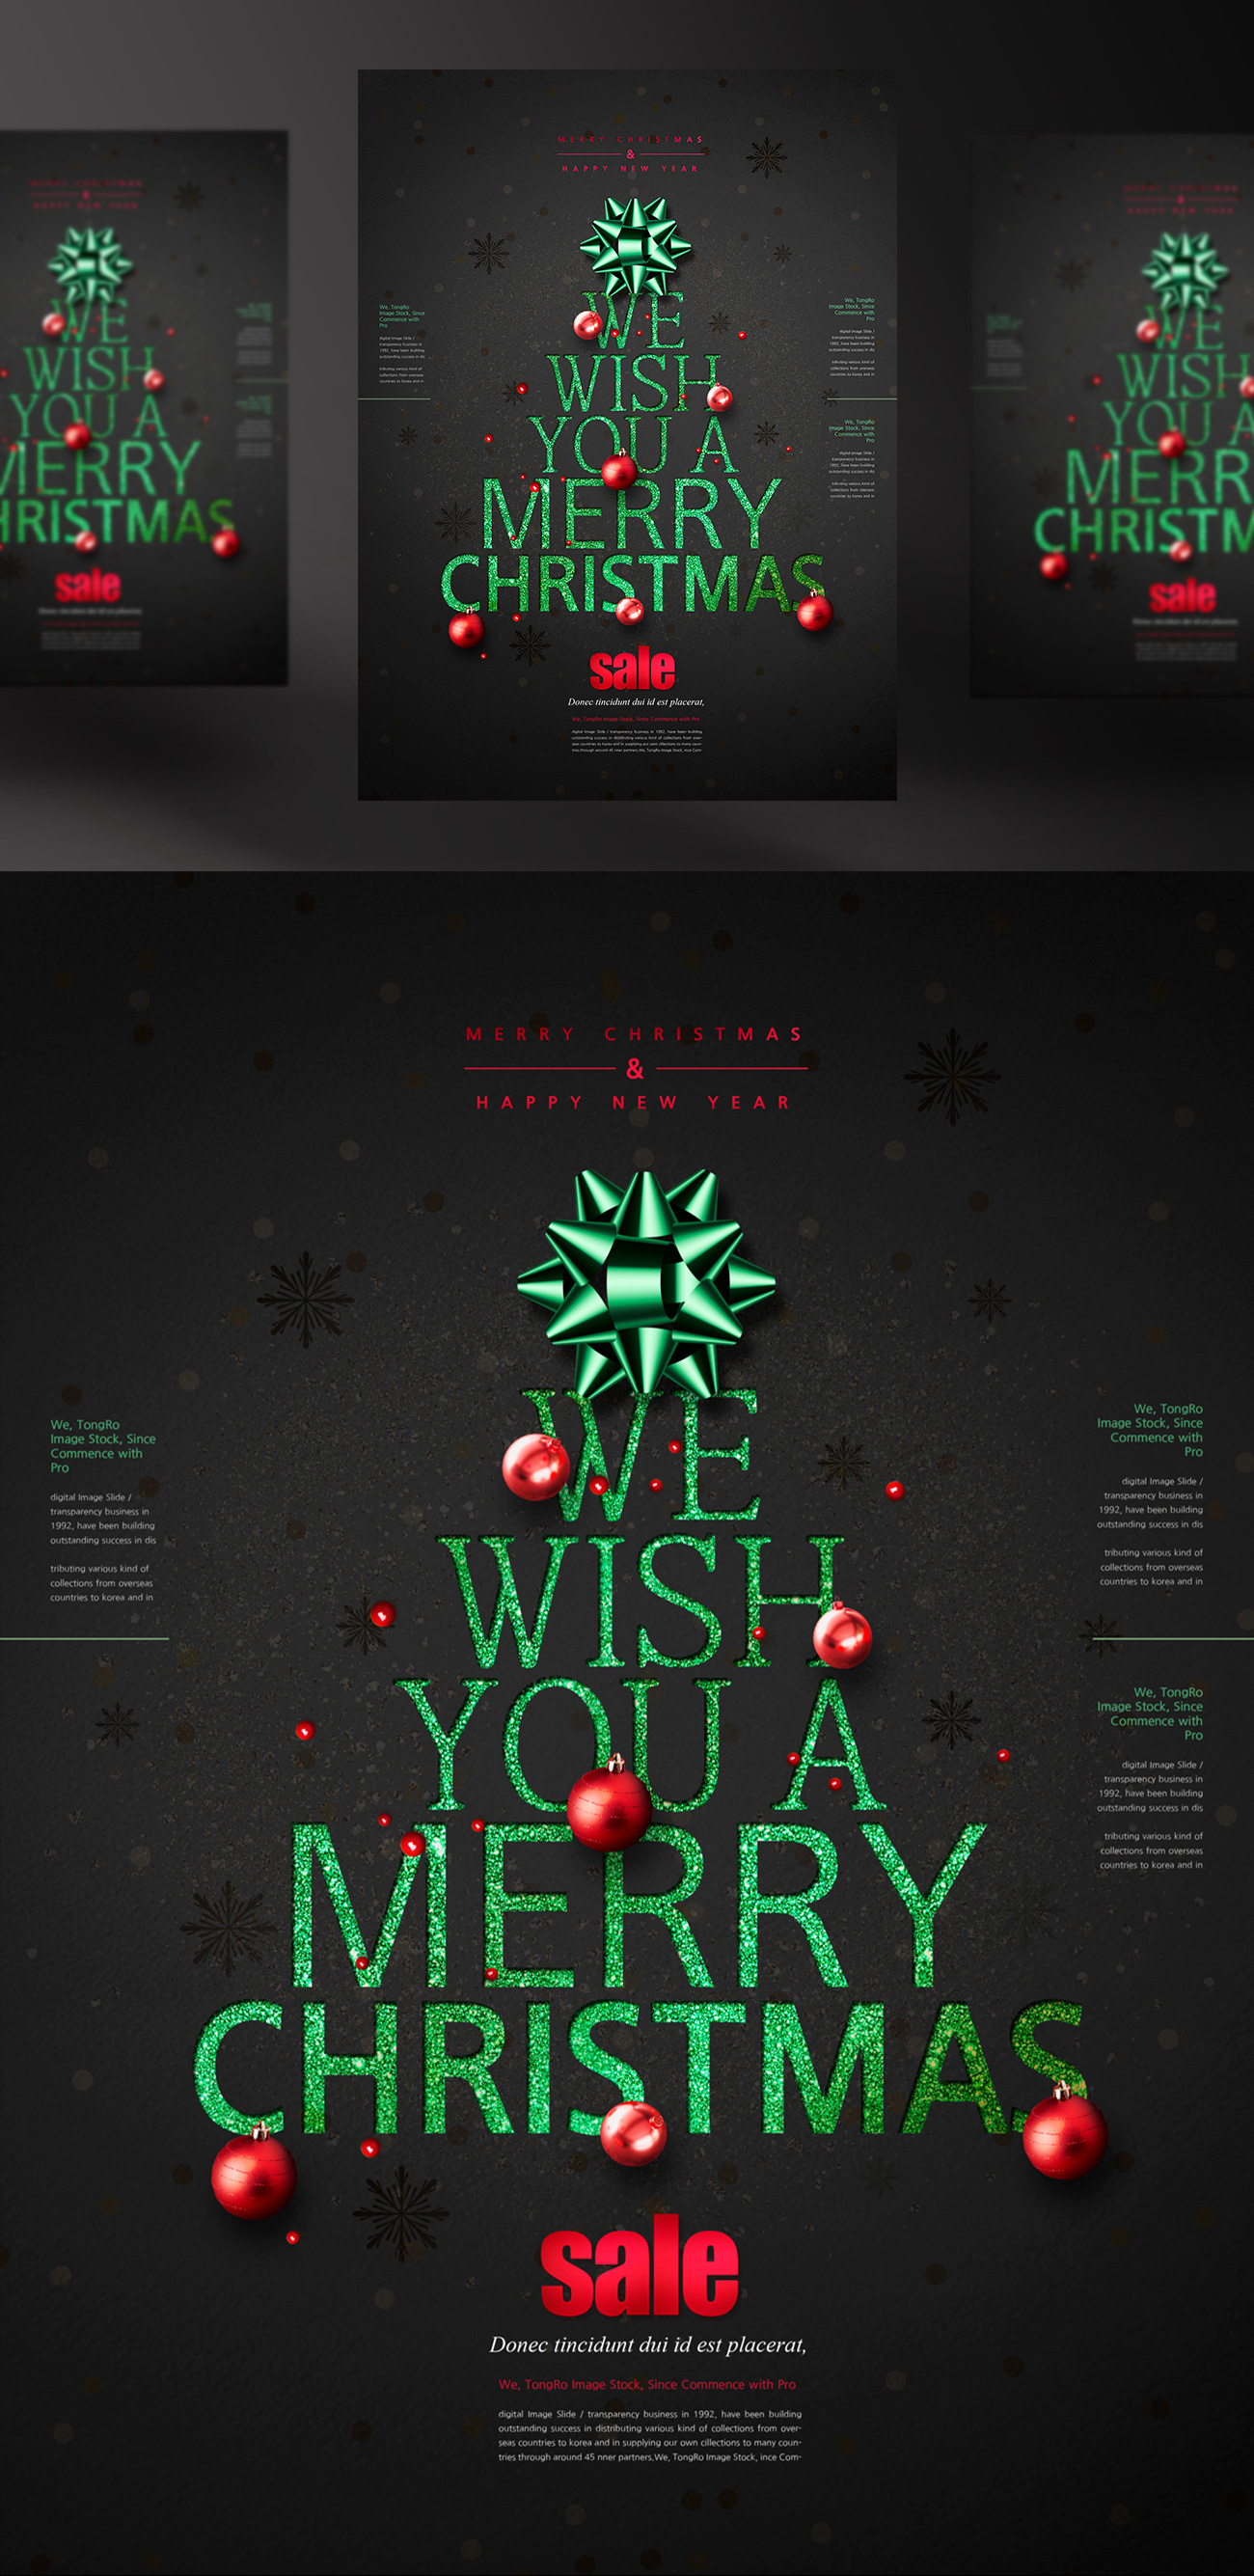 最新圣诞节促销活动传单海报PSD素材模板 Merry Chr